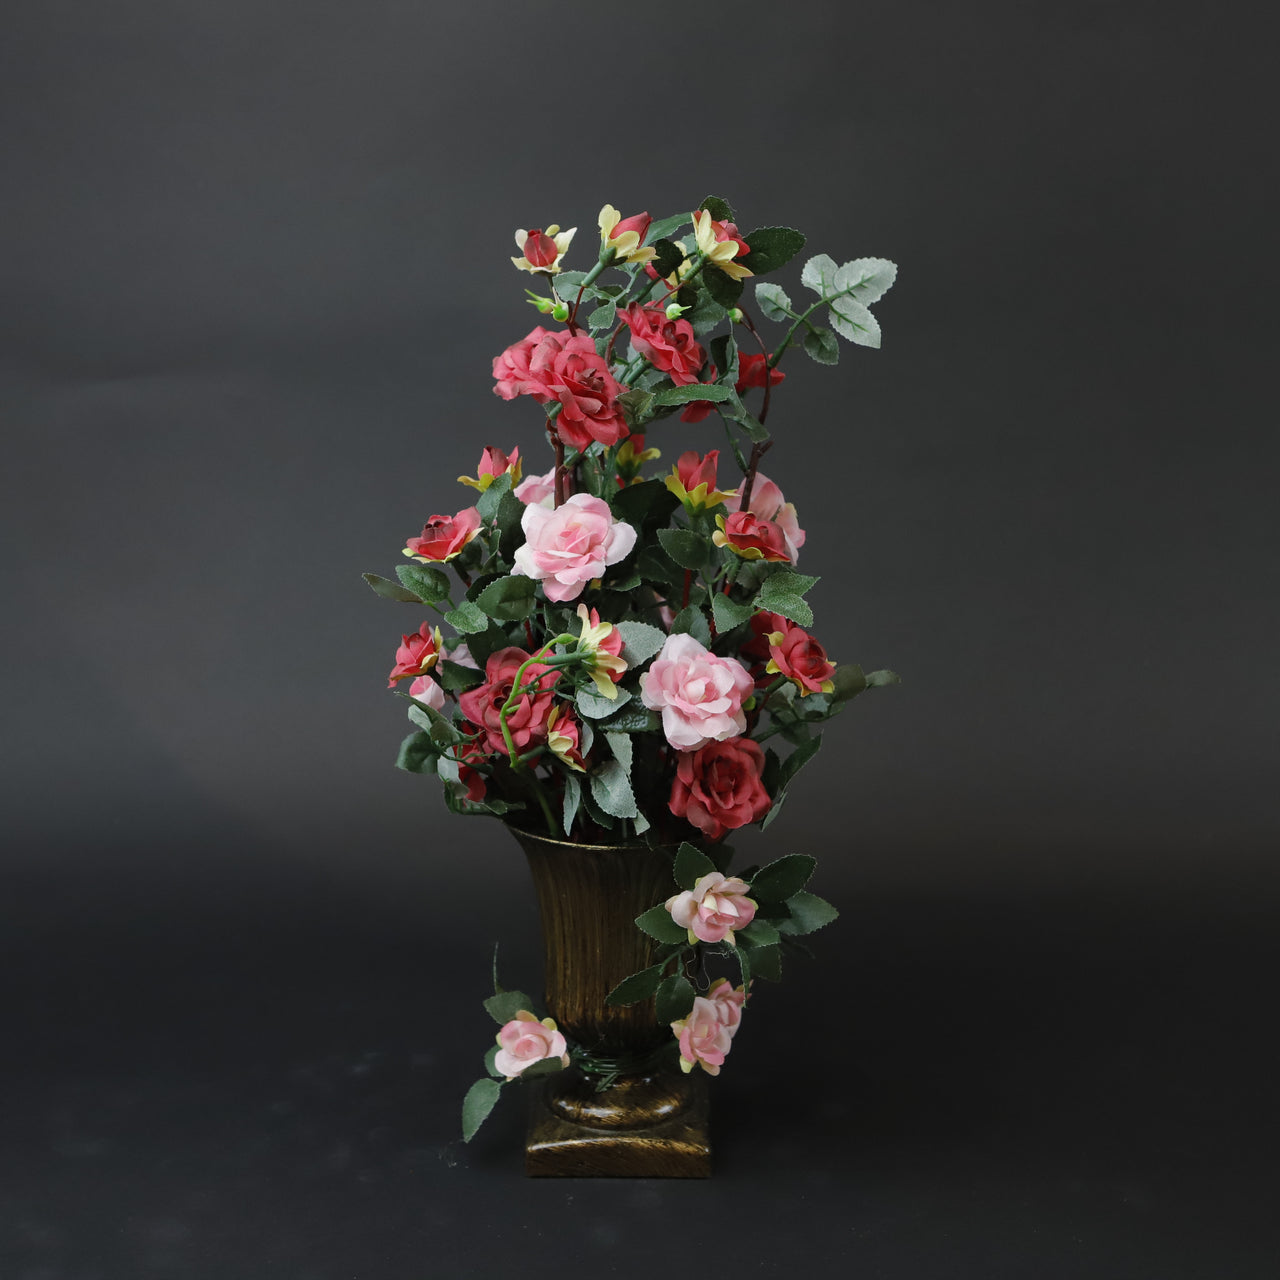 HCFL6984 - Pink Rose Pedestal Bouquet